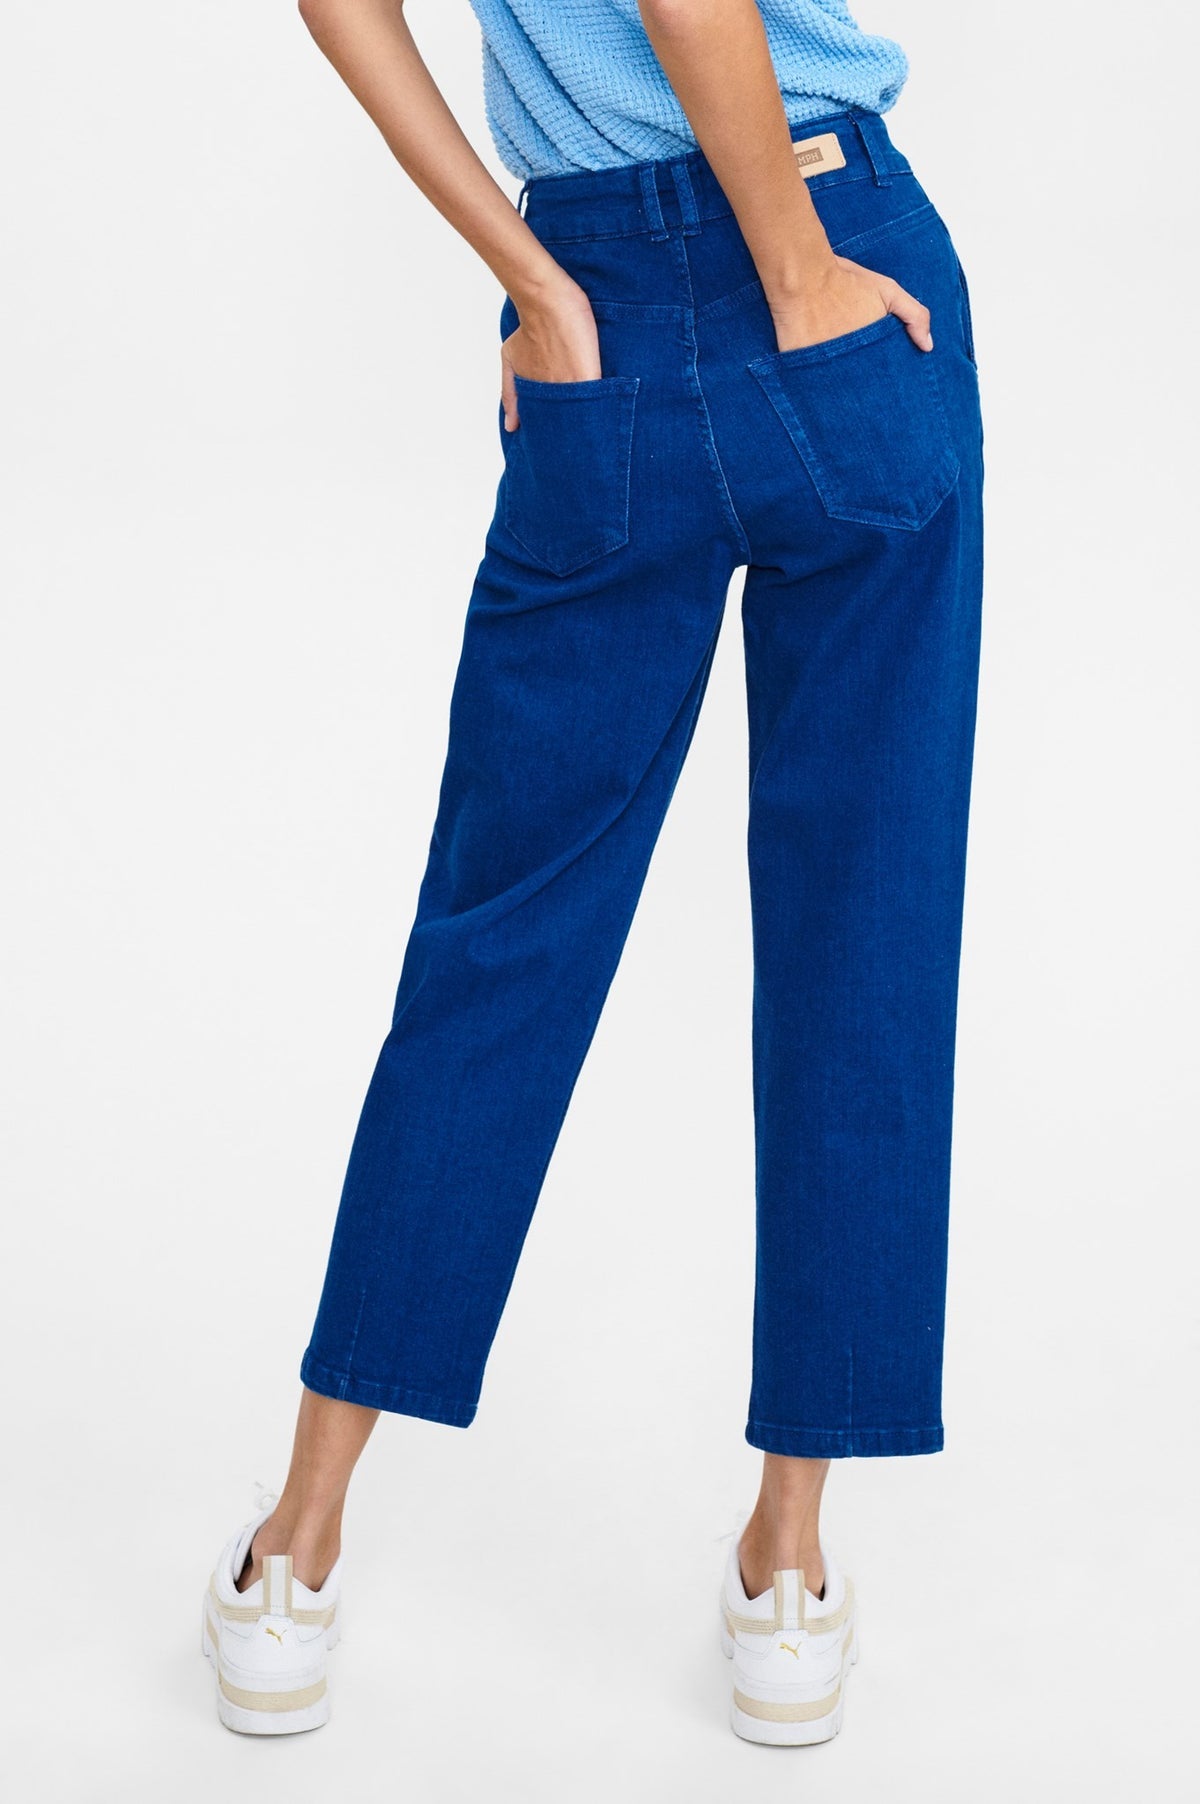 nustormy jeans - vintage blue